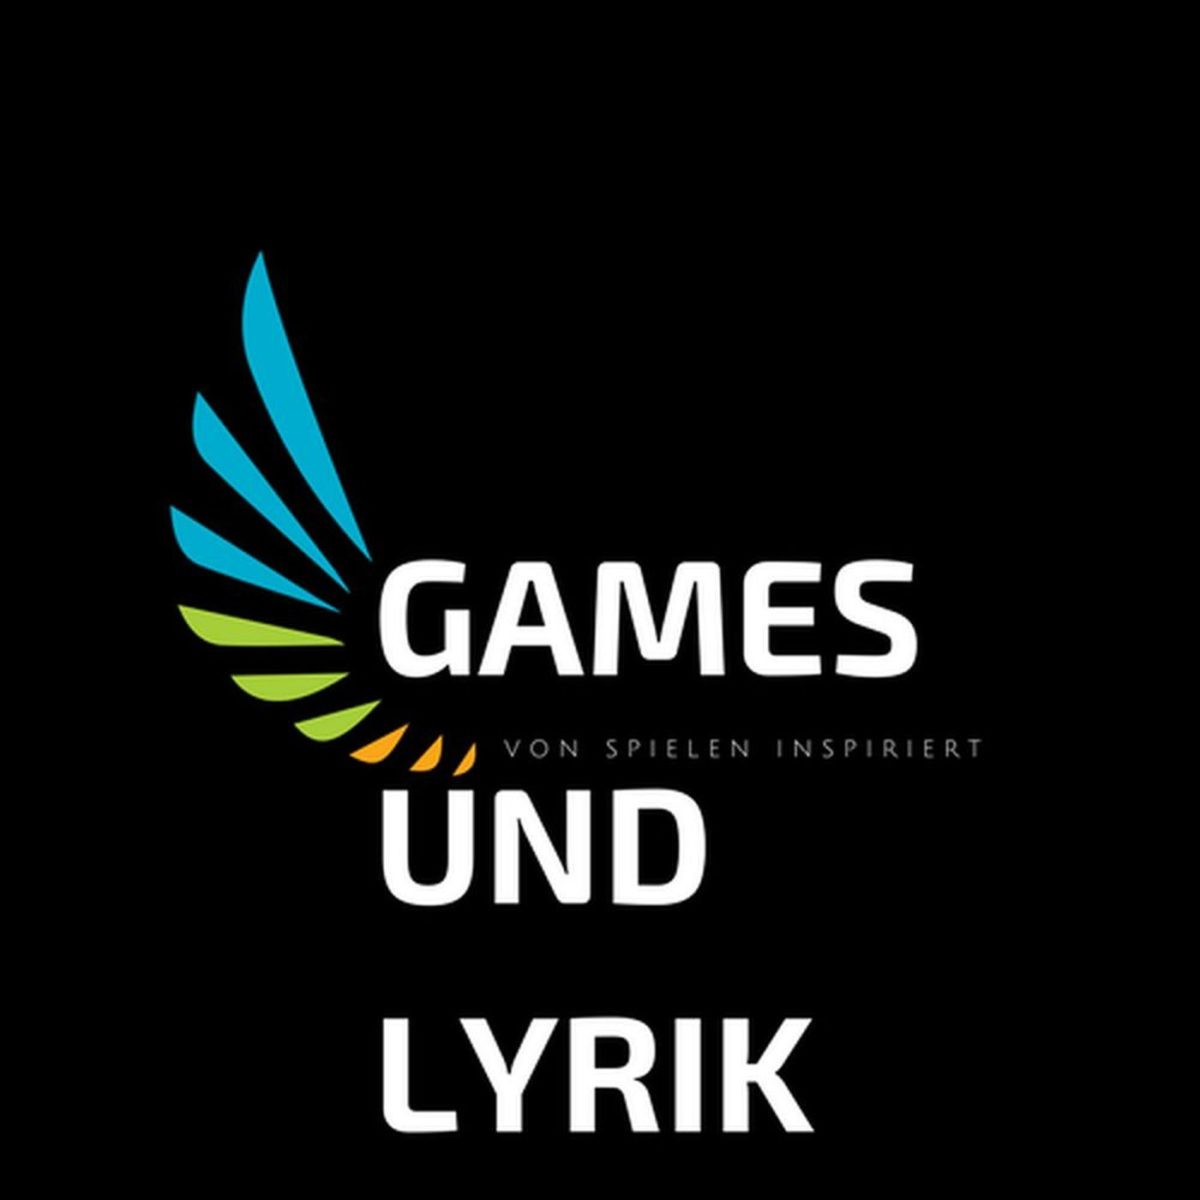 Логотип игара и поезије